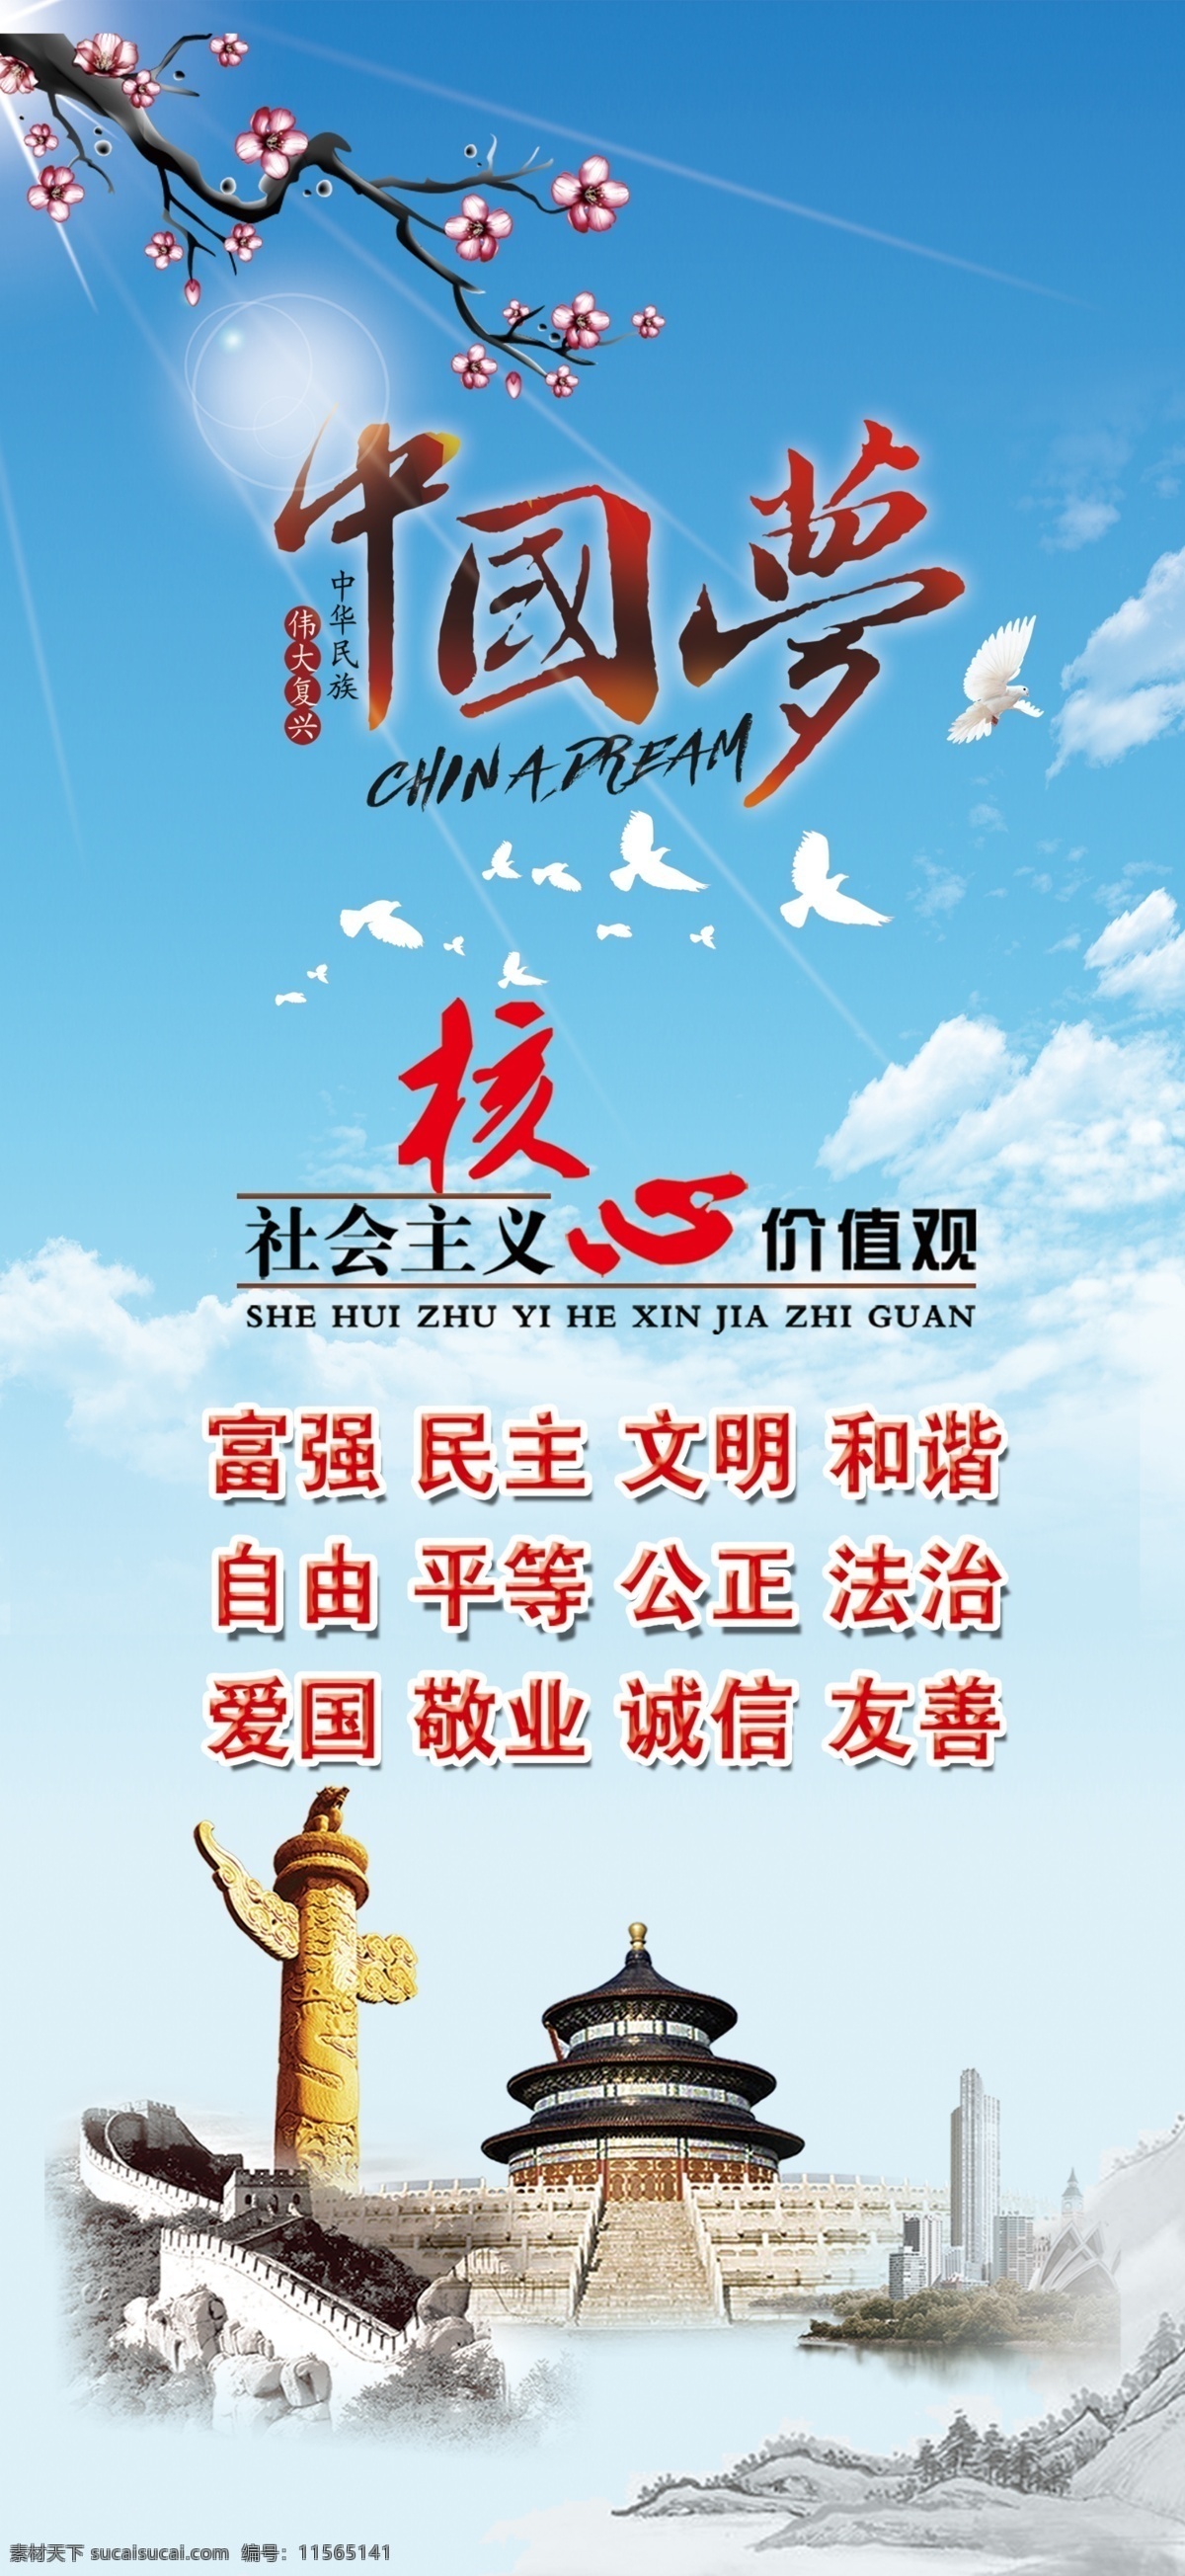 中国梦 核心价值观 天坛 24字方针 价值观 展板模板